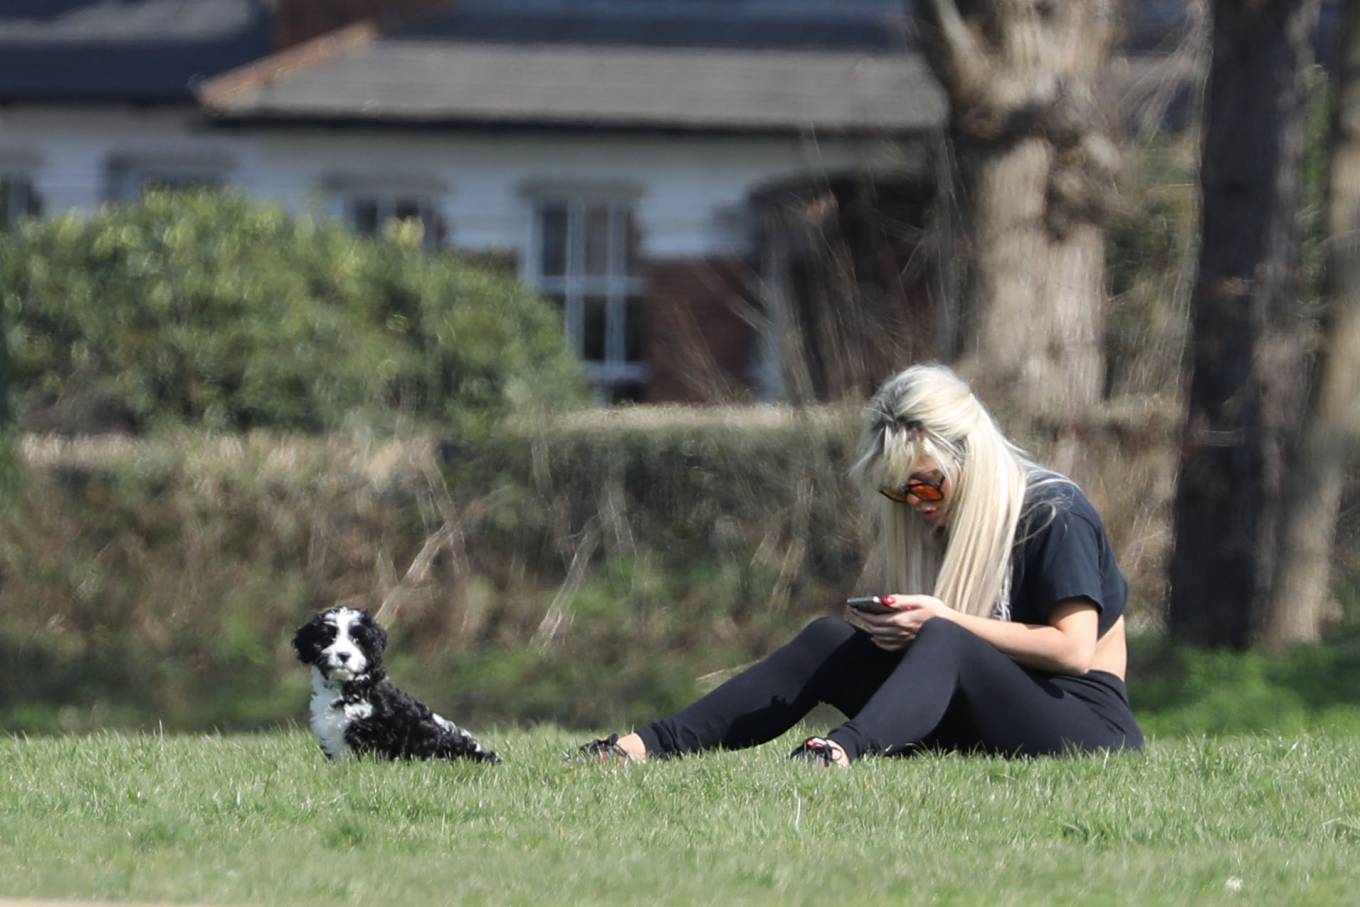 Bianca Gascoigne 2022 : Bianca Gascoigne – Seen in a local park with her new puppy Panda in Essex-11